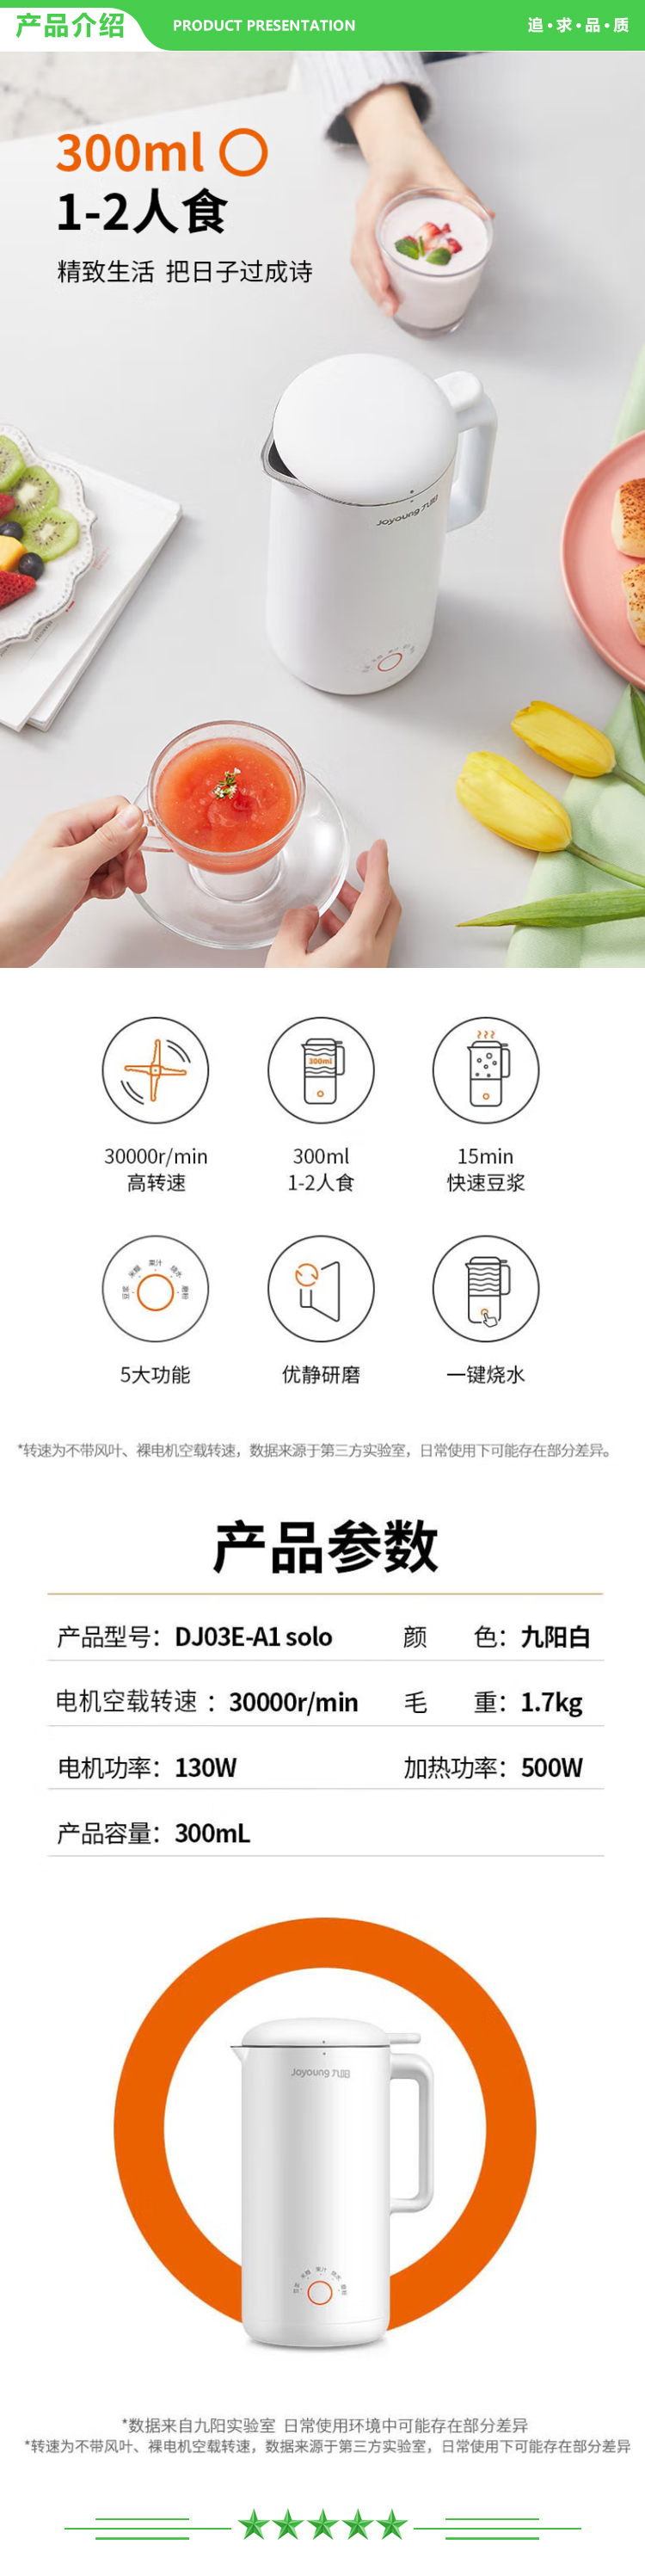 九阳 Joyoung DJ03E-A1solo 迷你榨汁机 0.3L小型豆浆机 快速豆浆 多功能破壁机 粉色.jpg